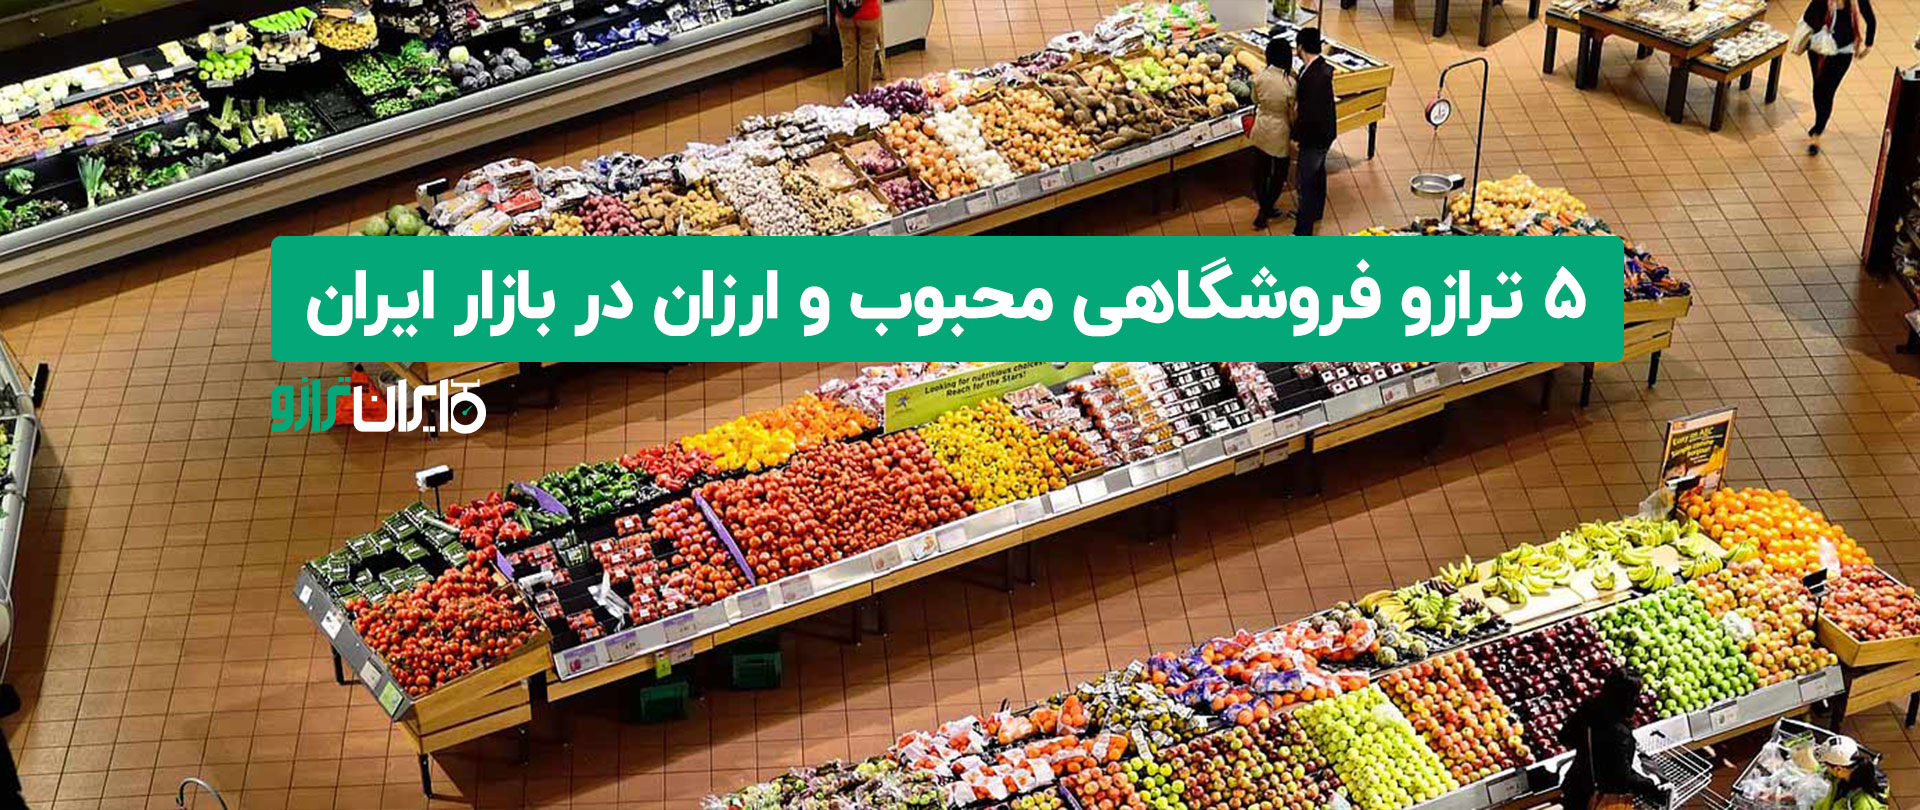 ۵ ترازو فروشگاهی محبوب و ارزان در بازار ایران